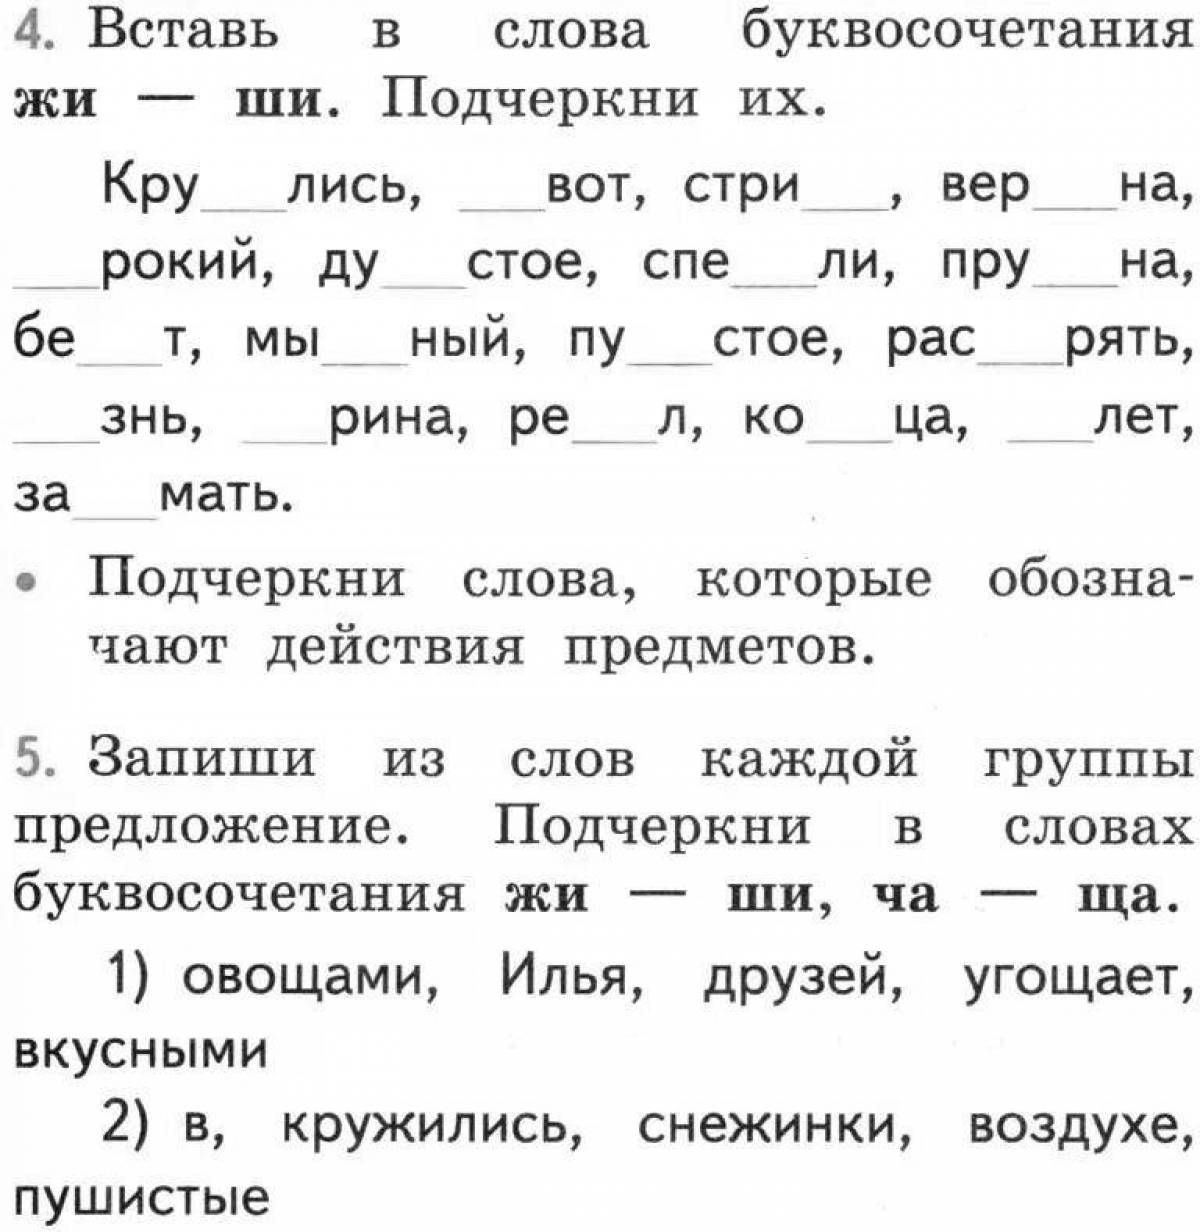 Задания по русскому языку 1 класс жи ши